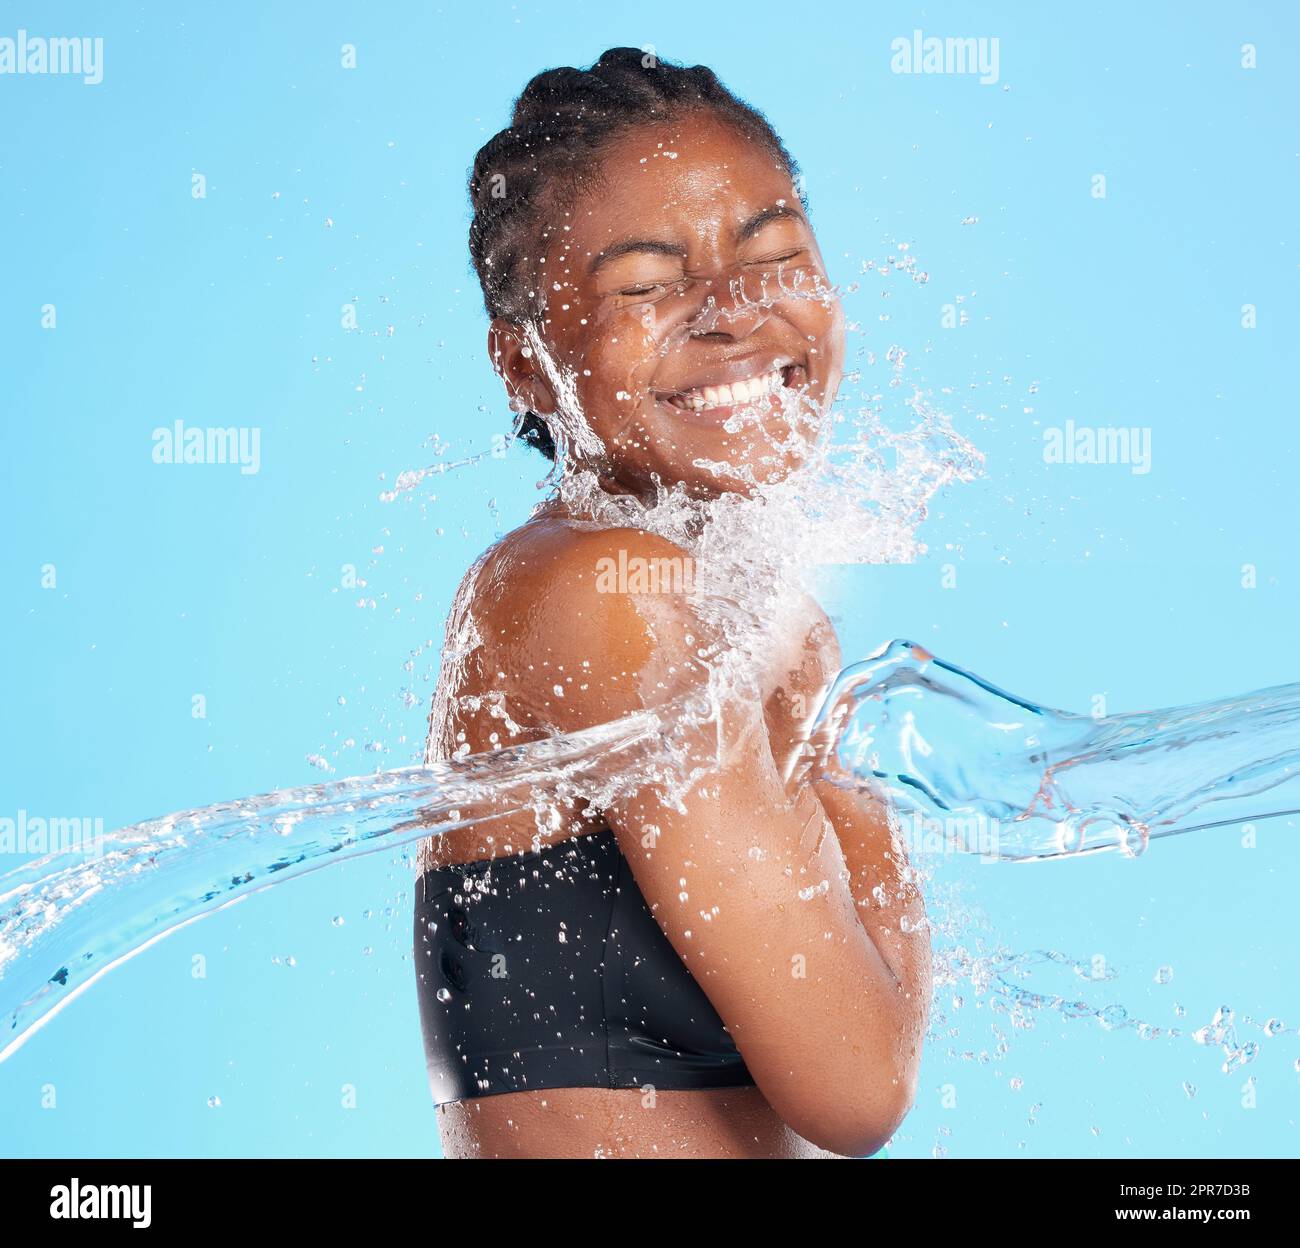 Ihr Lächeln ist Sonnenschein. Aufnahme einer schönen jungen Frau, die vor blauem Hintergrund mit Wasser bespritzt wurde. Stockfoto